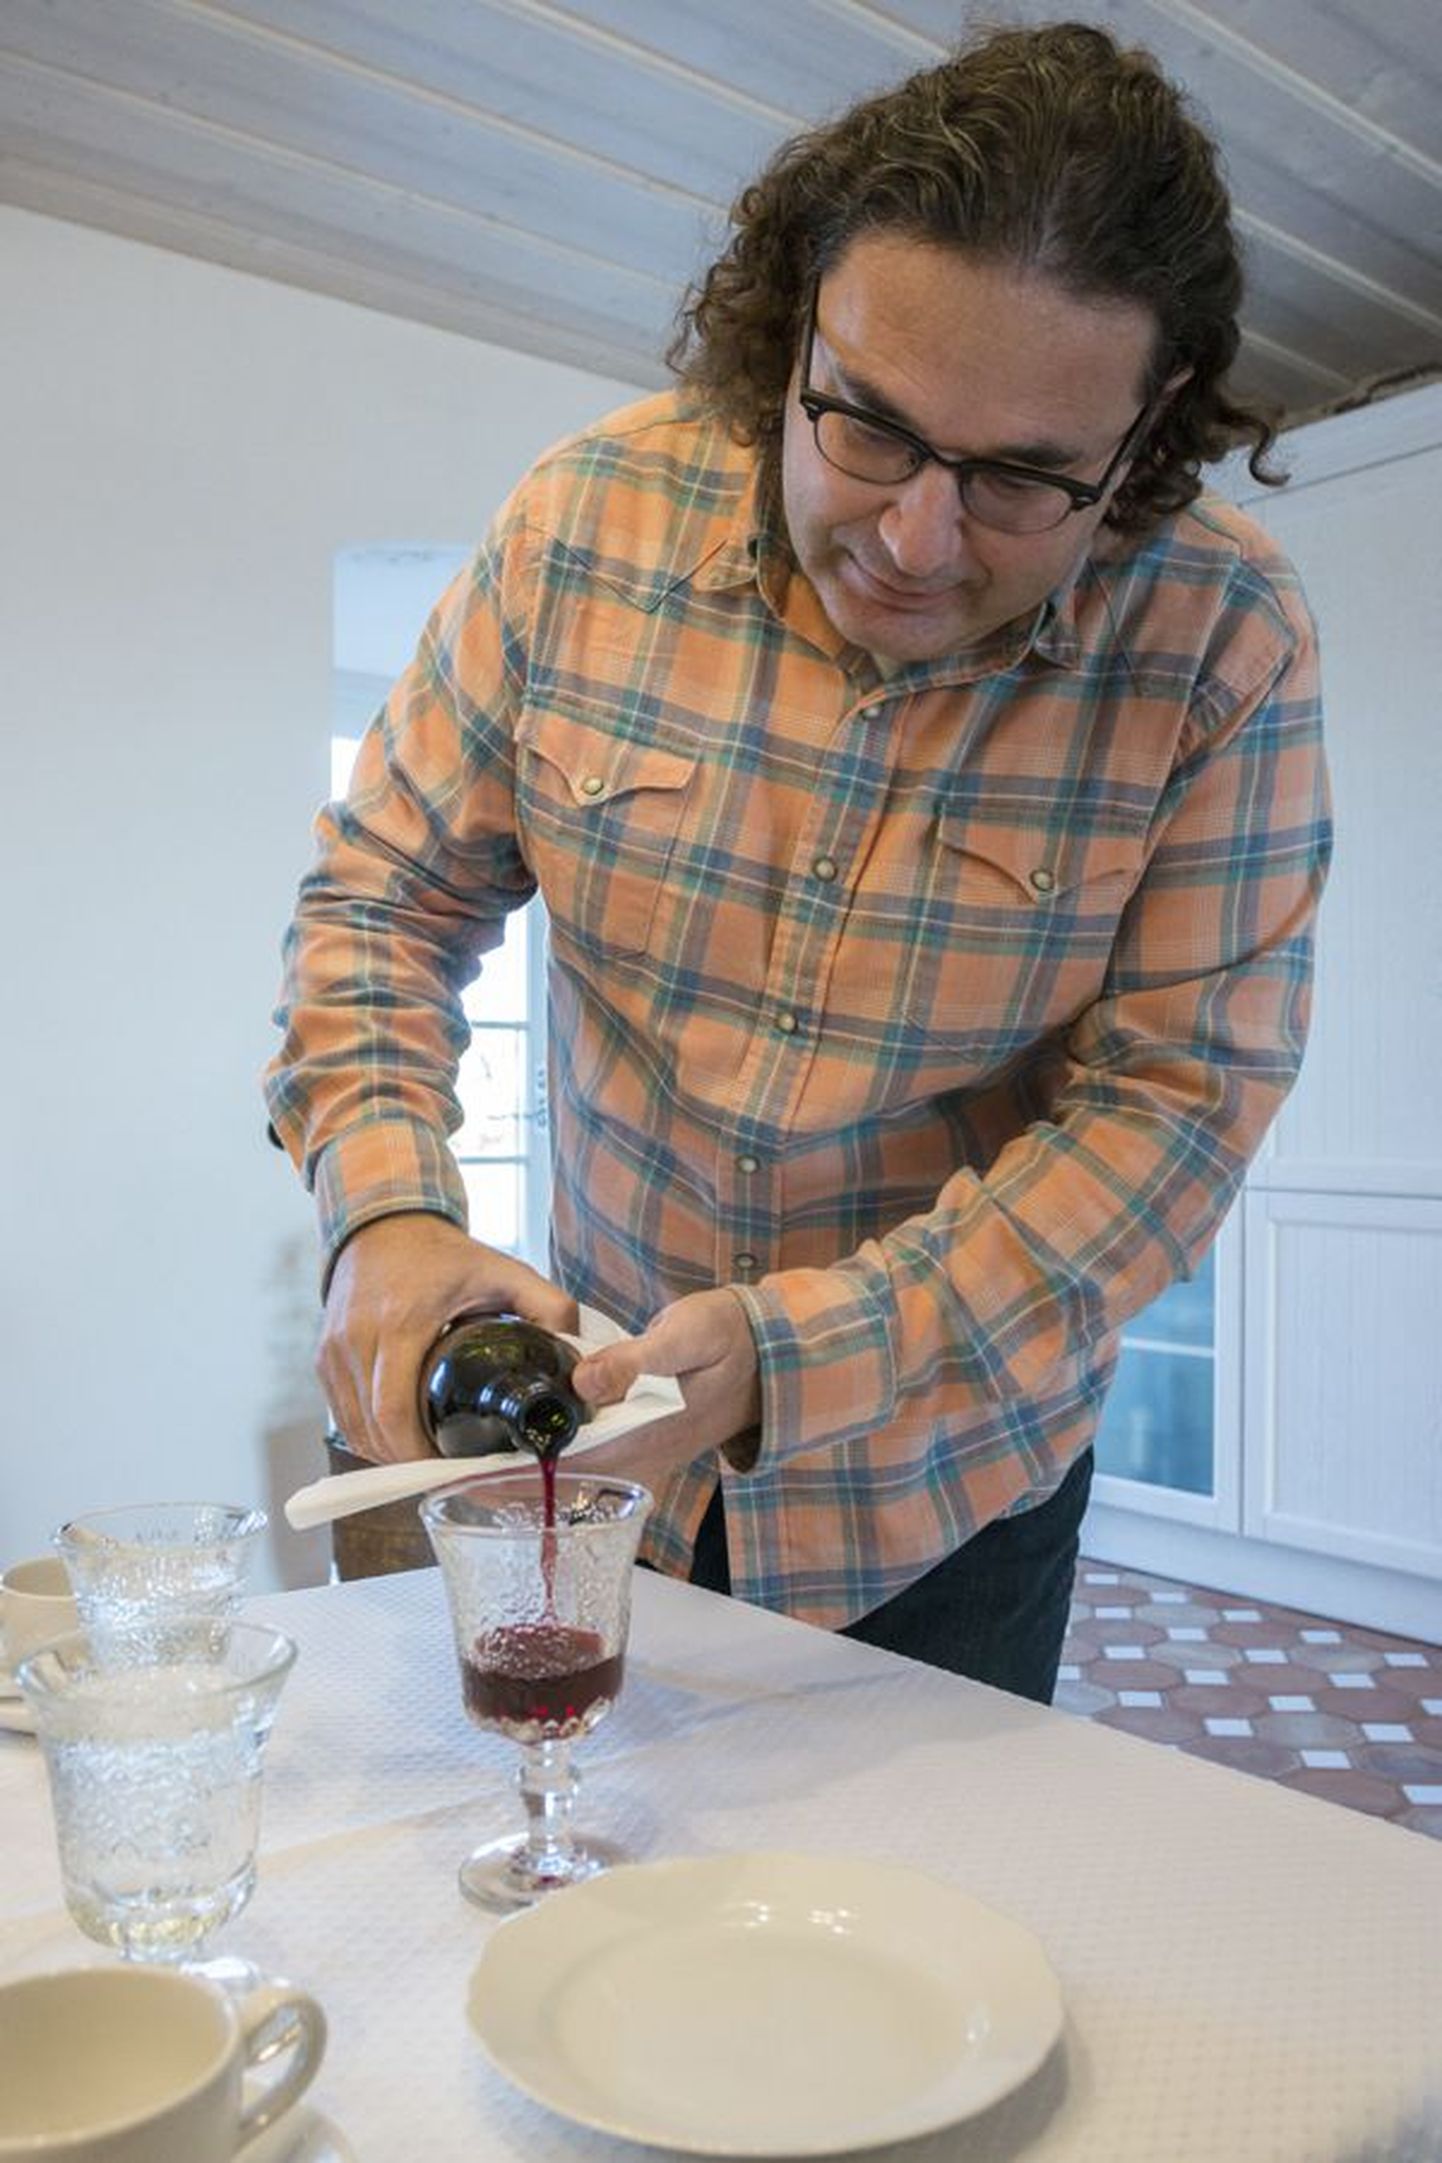 Õnne veinitalu peremees Georg Gavronski pakub külalistele omavalmistatud märjukest. Tulevikus loodab ta aina rohkem teha viinamarjaveini.